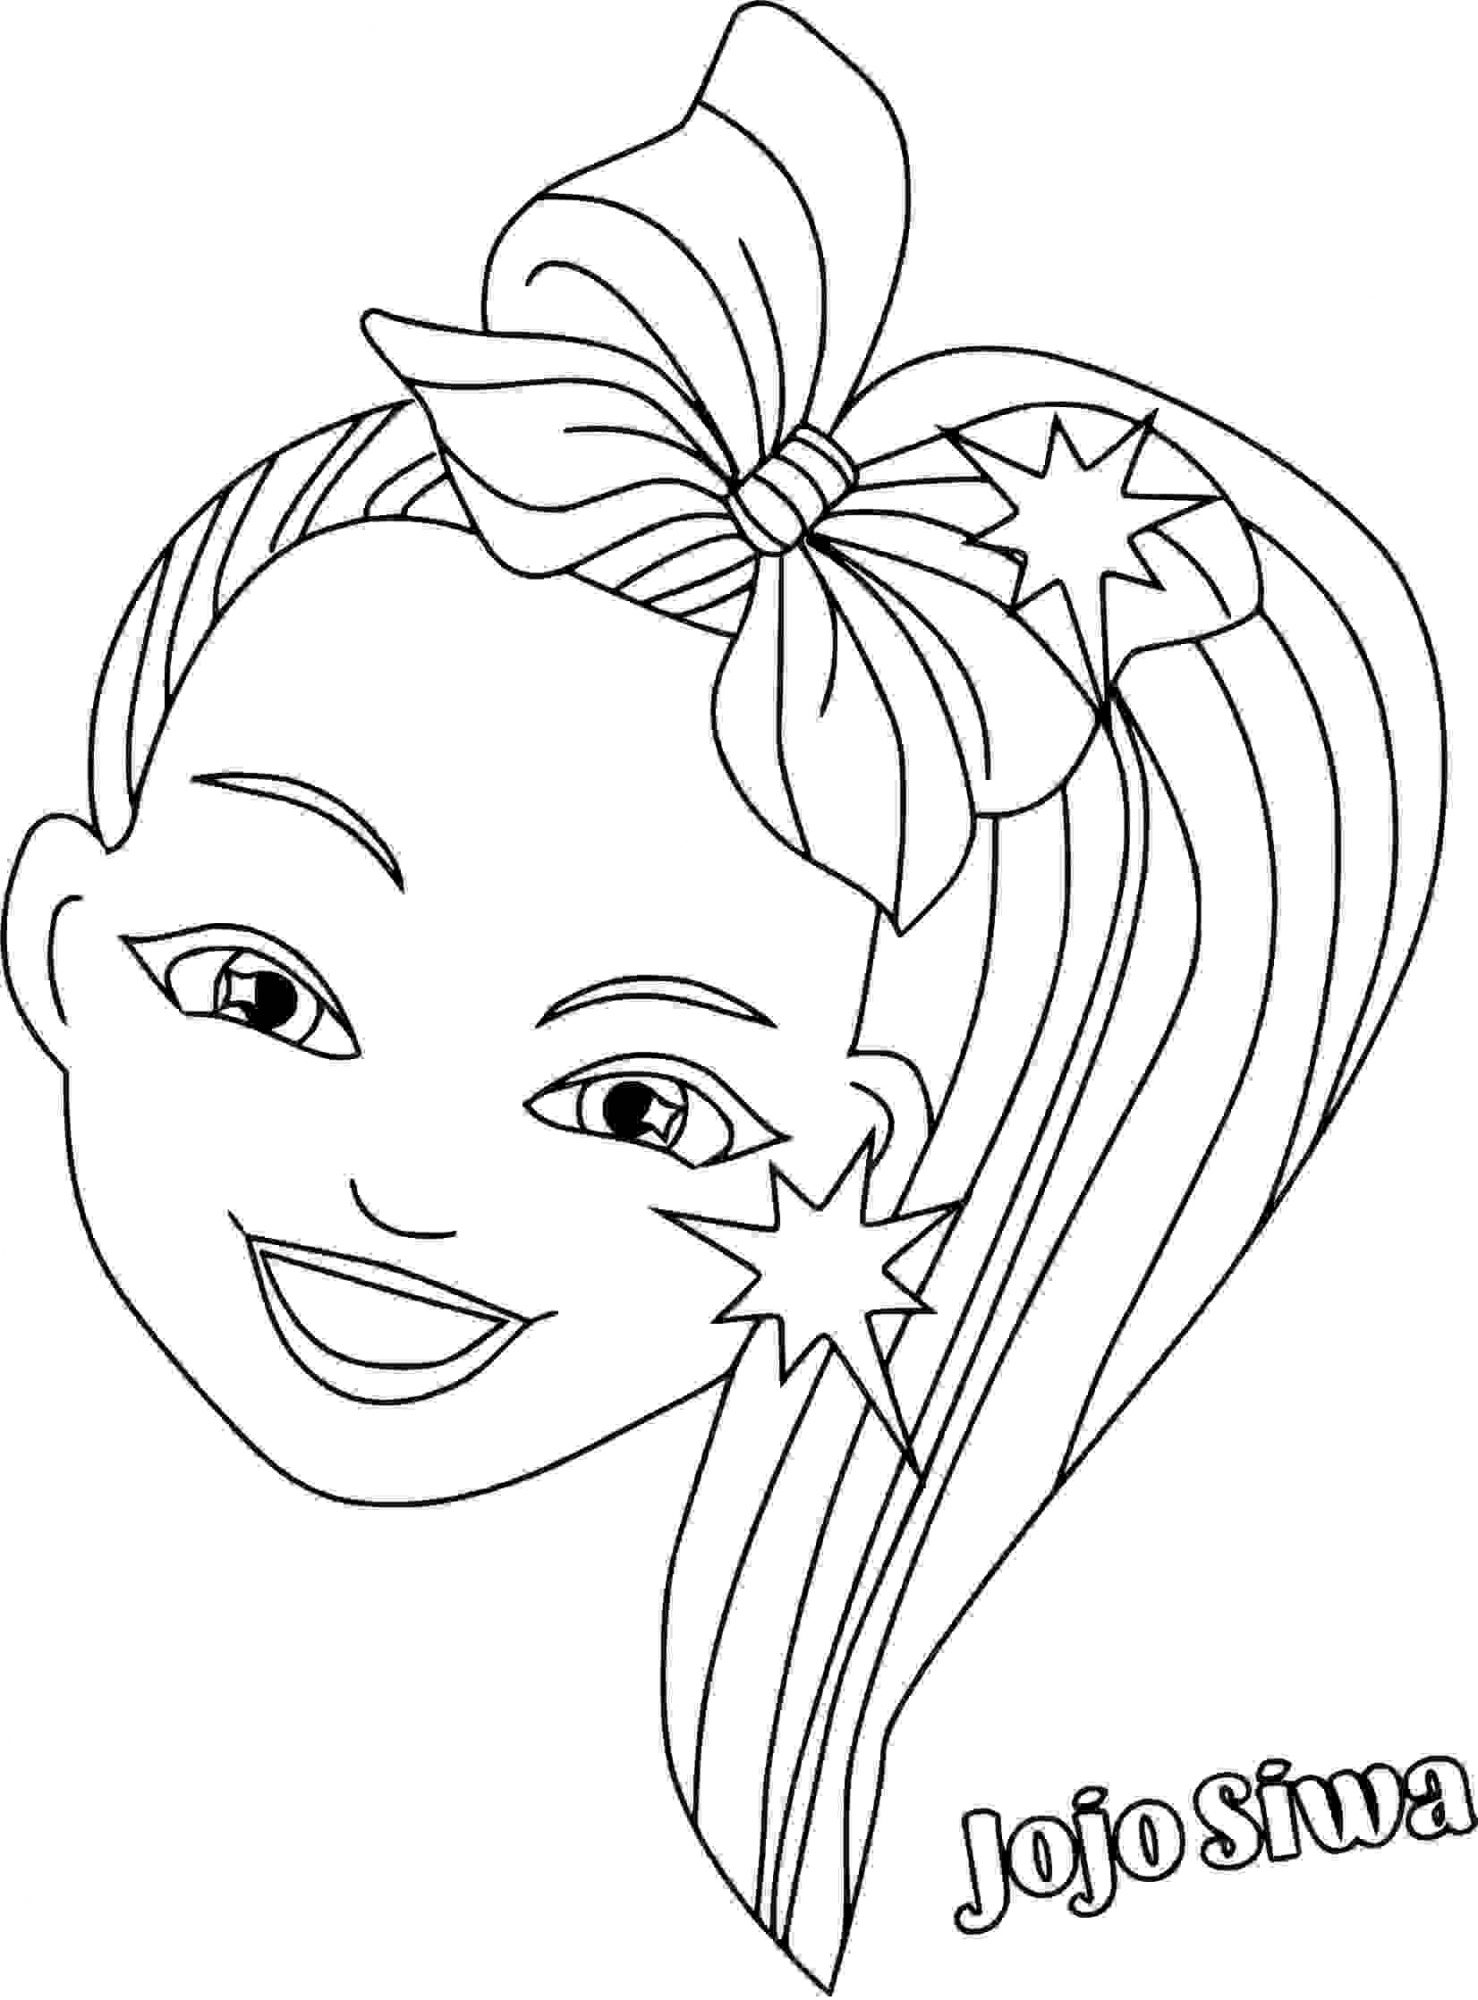 Kopf von Jojo Siwa mit bunten Haaren Malvorlagen